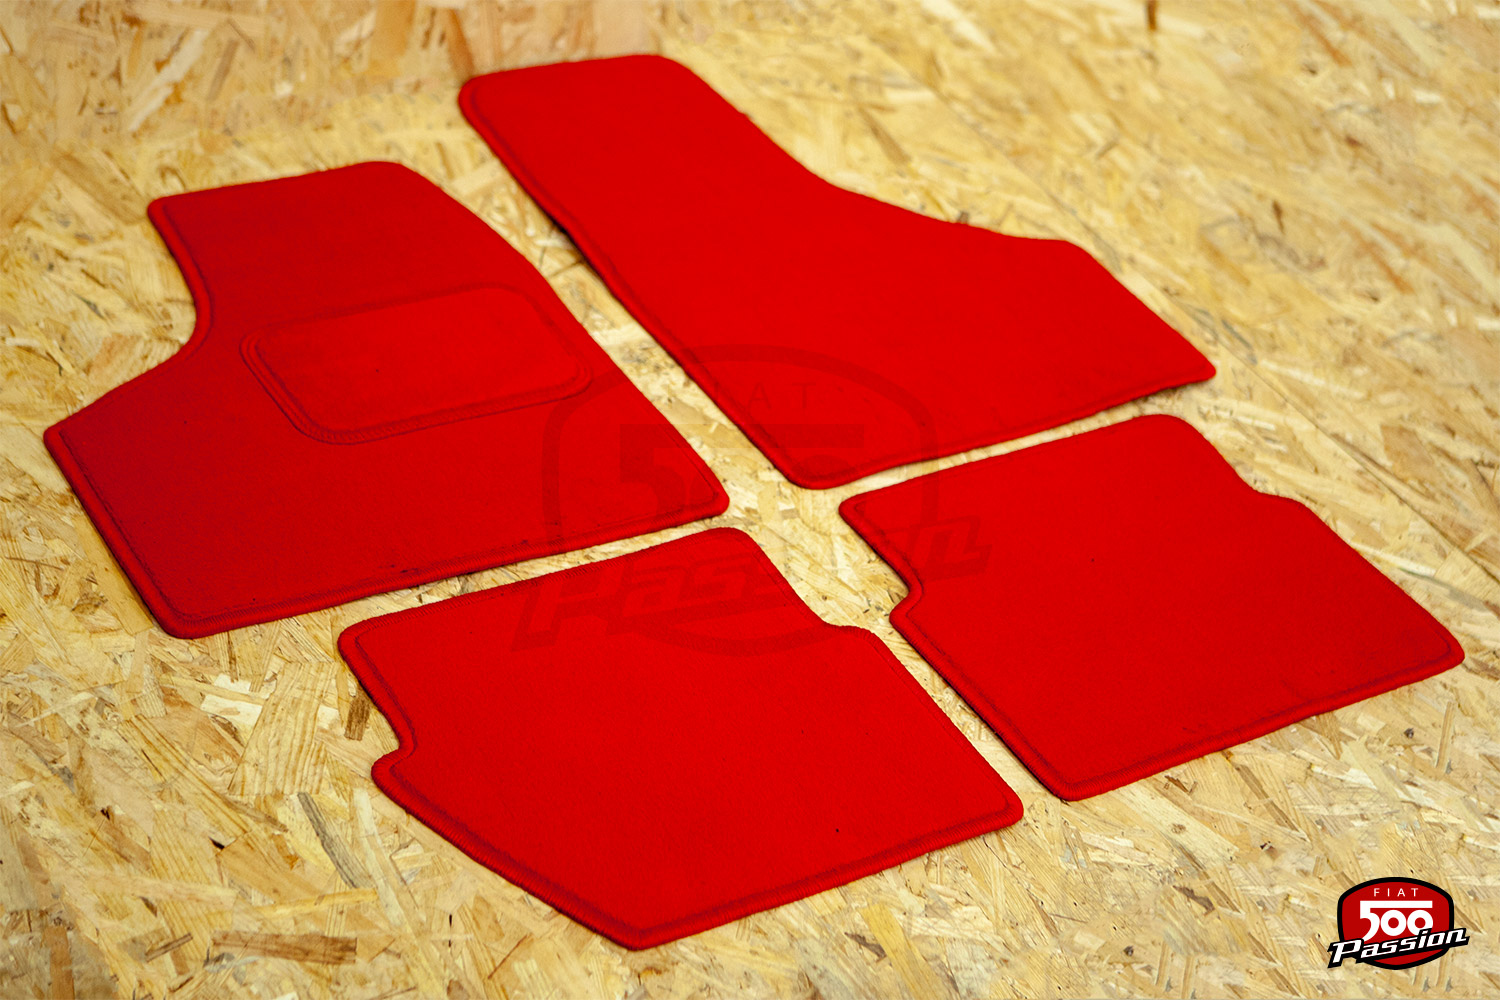 KFZ 38958: Voiture - Tapis de sol, rouge, 4 pièces chez reichelt elektronik